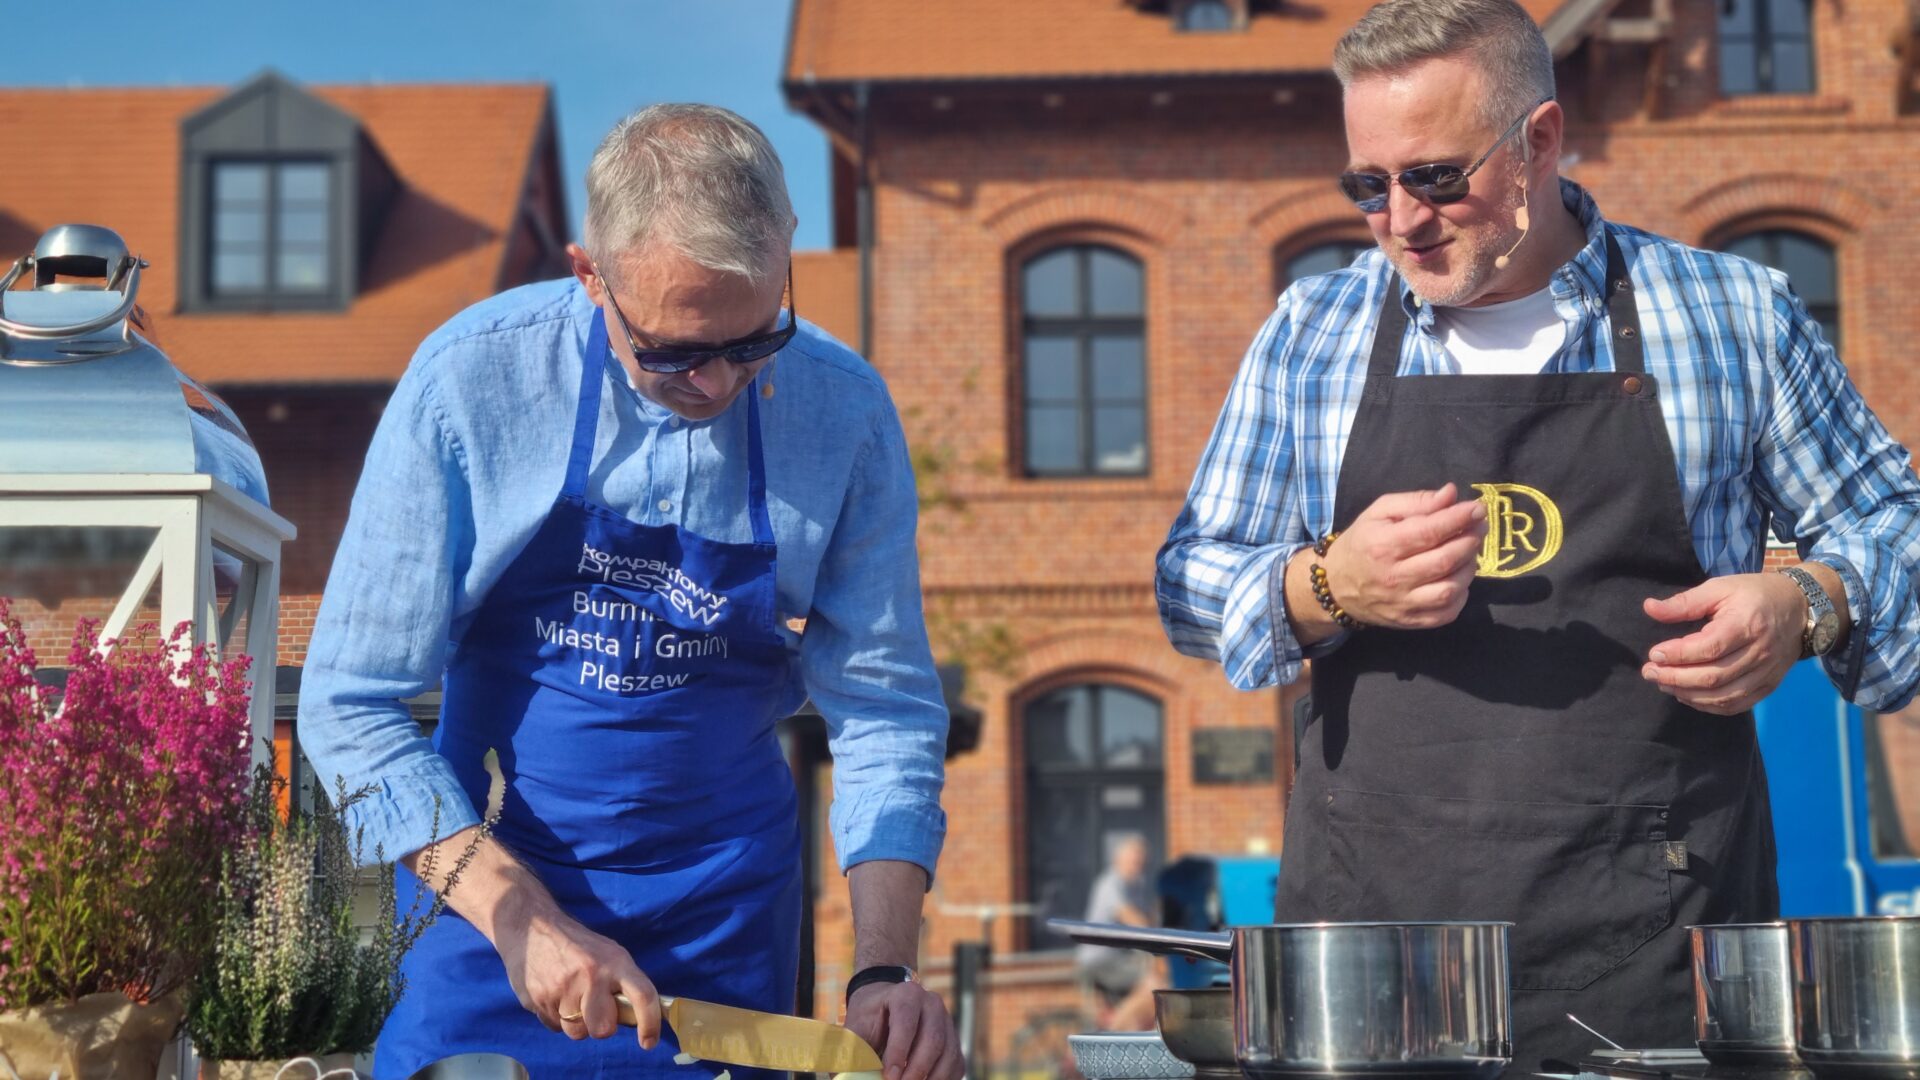 Burmistrz Pleszewa gotujący na torowisku przy Zajezdni Kultury wraz z Szefem Kuchni Patrykiem Dziamskim.